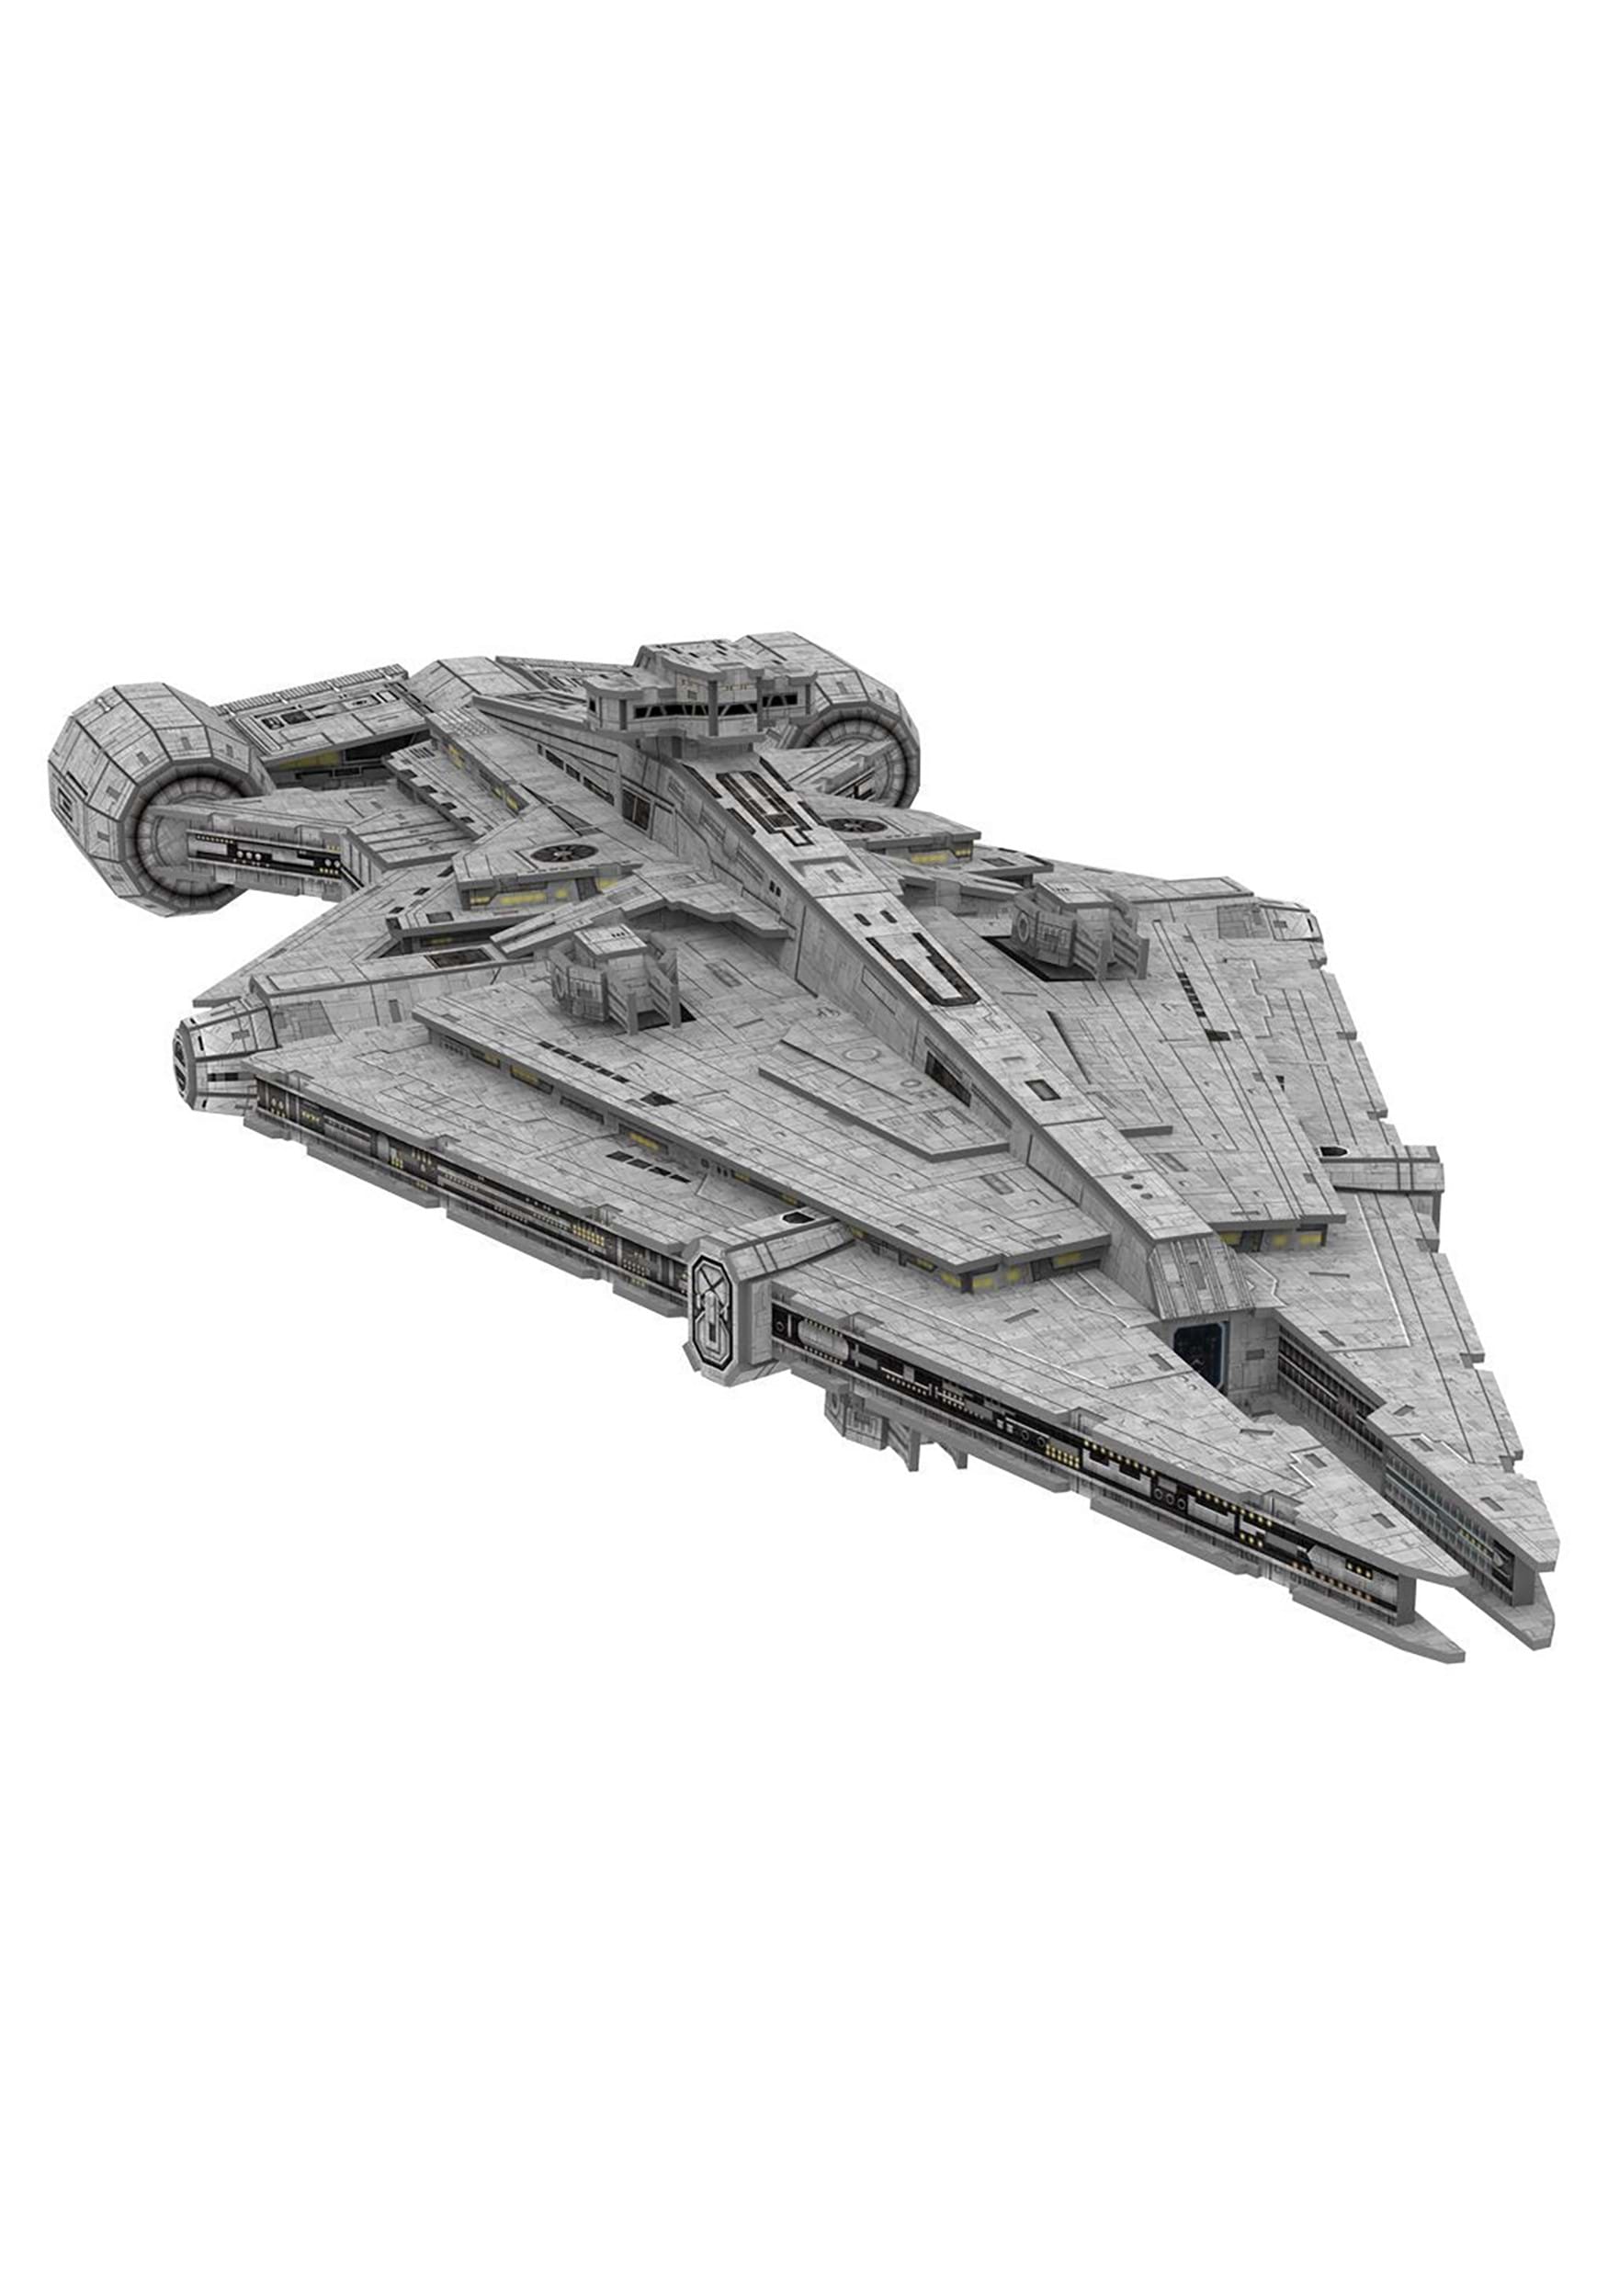 Star Wars Mandalorian Imperial Light Cruiser Paper Model Kit